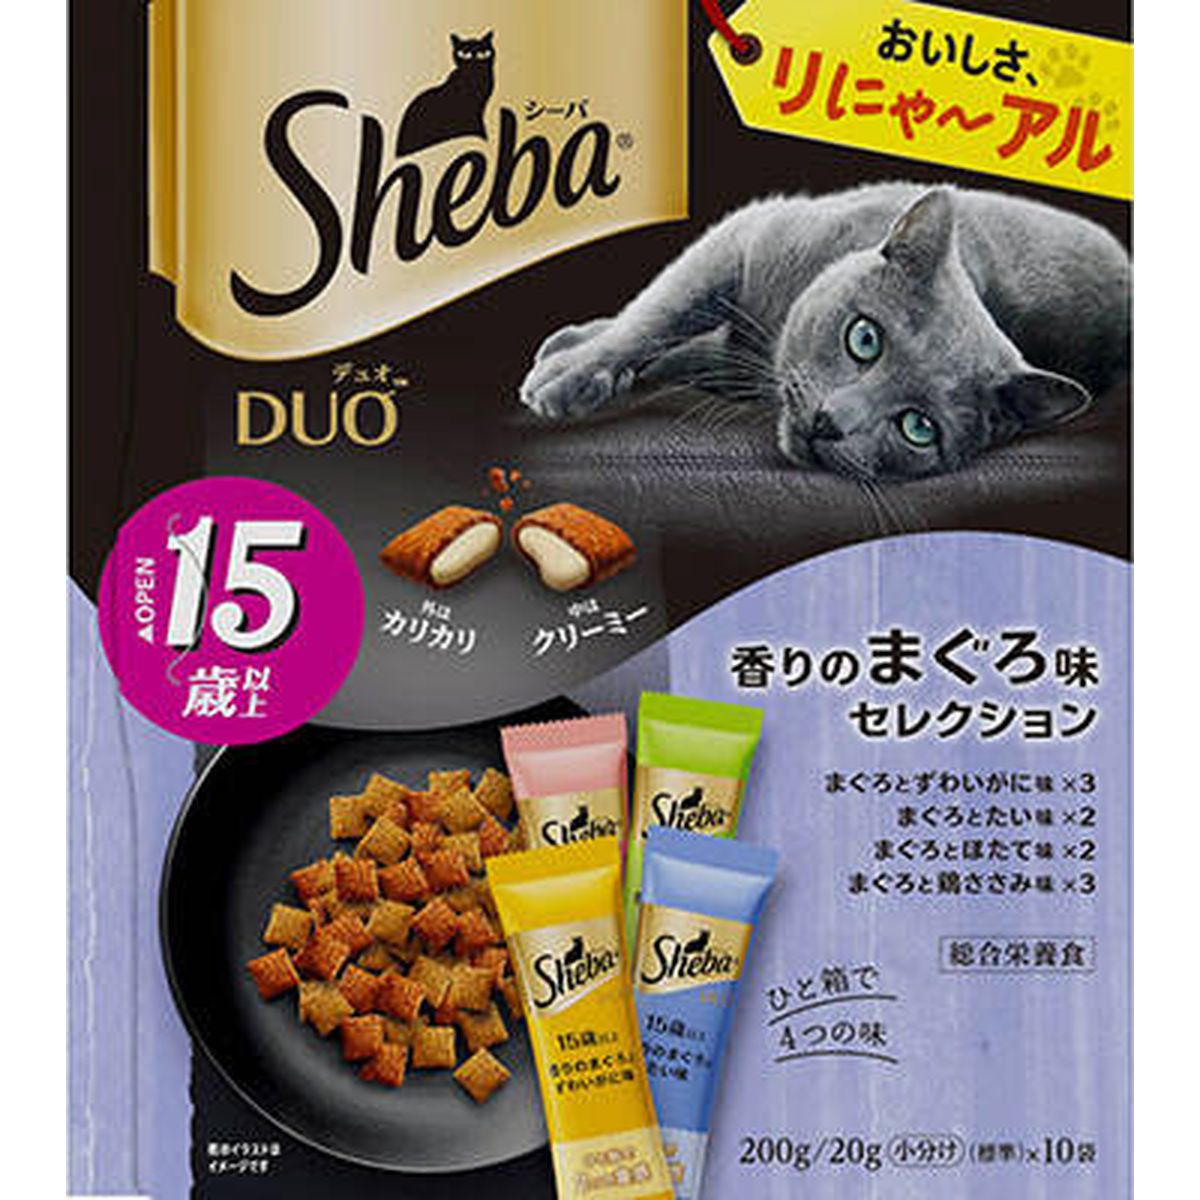 シーバ デュオ 15歳以上 香りのまぐろ味セレクション200g×12袋